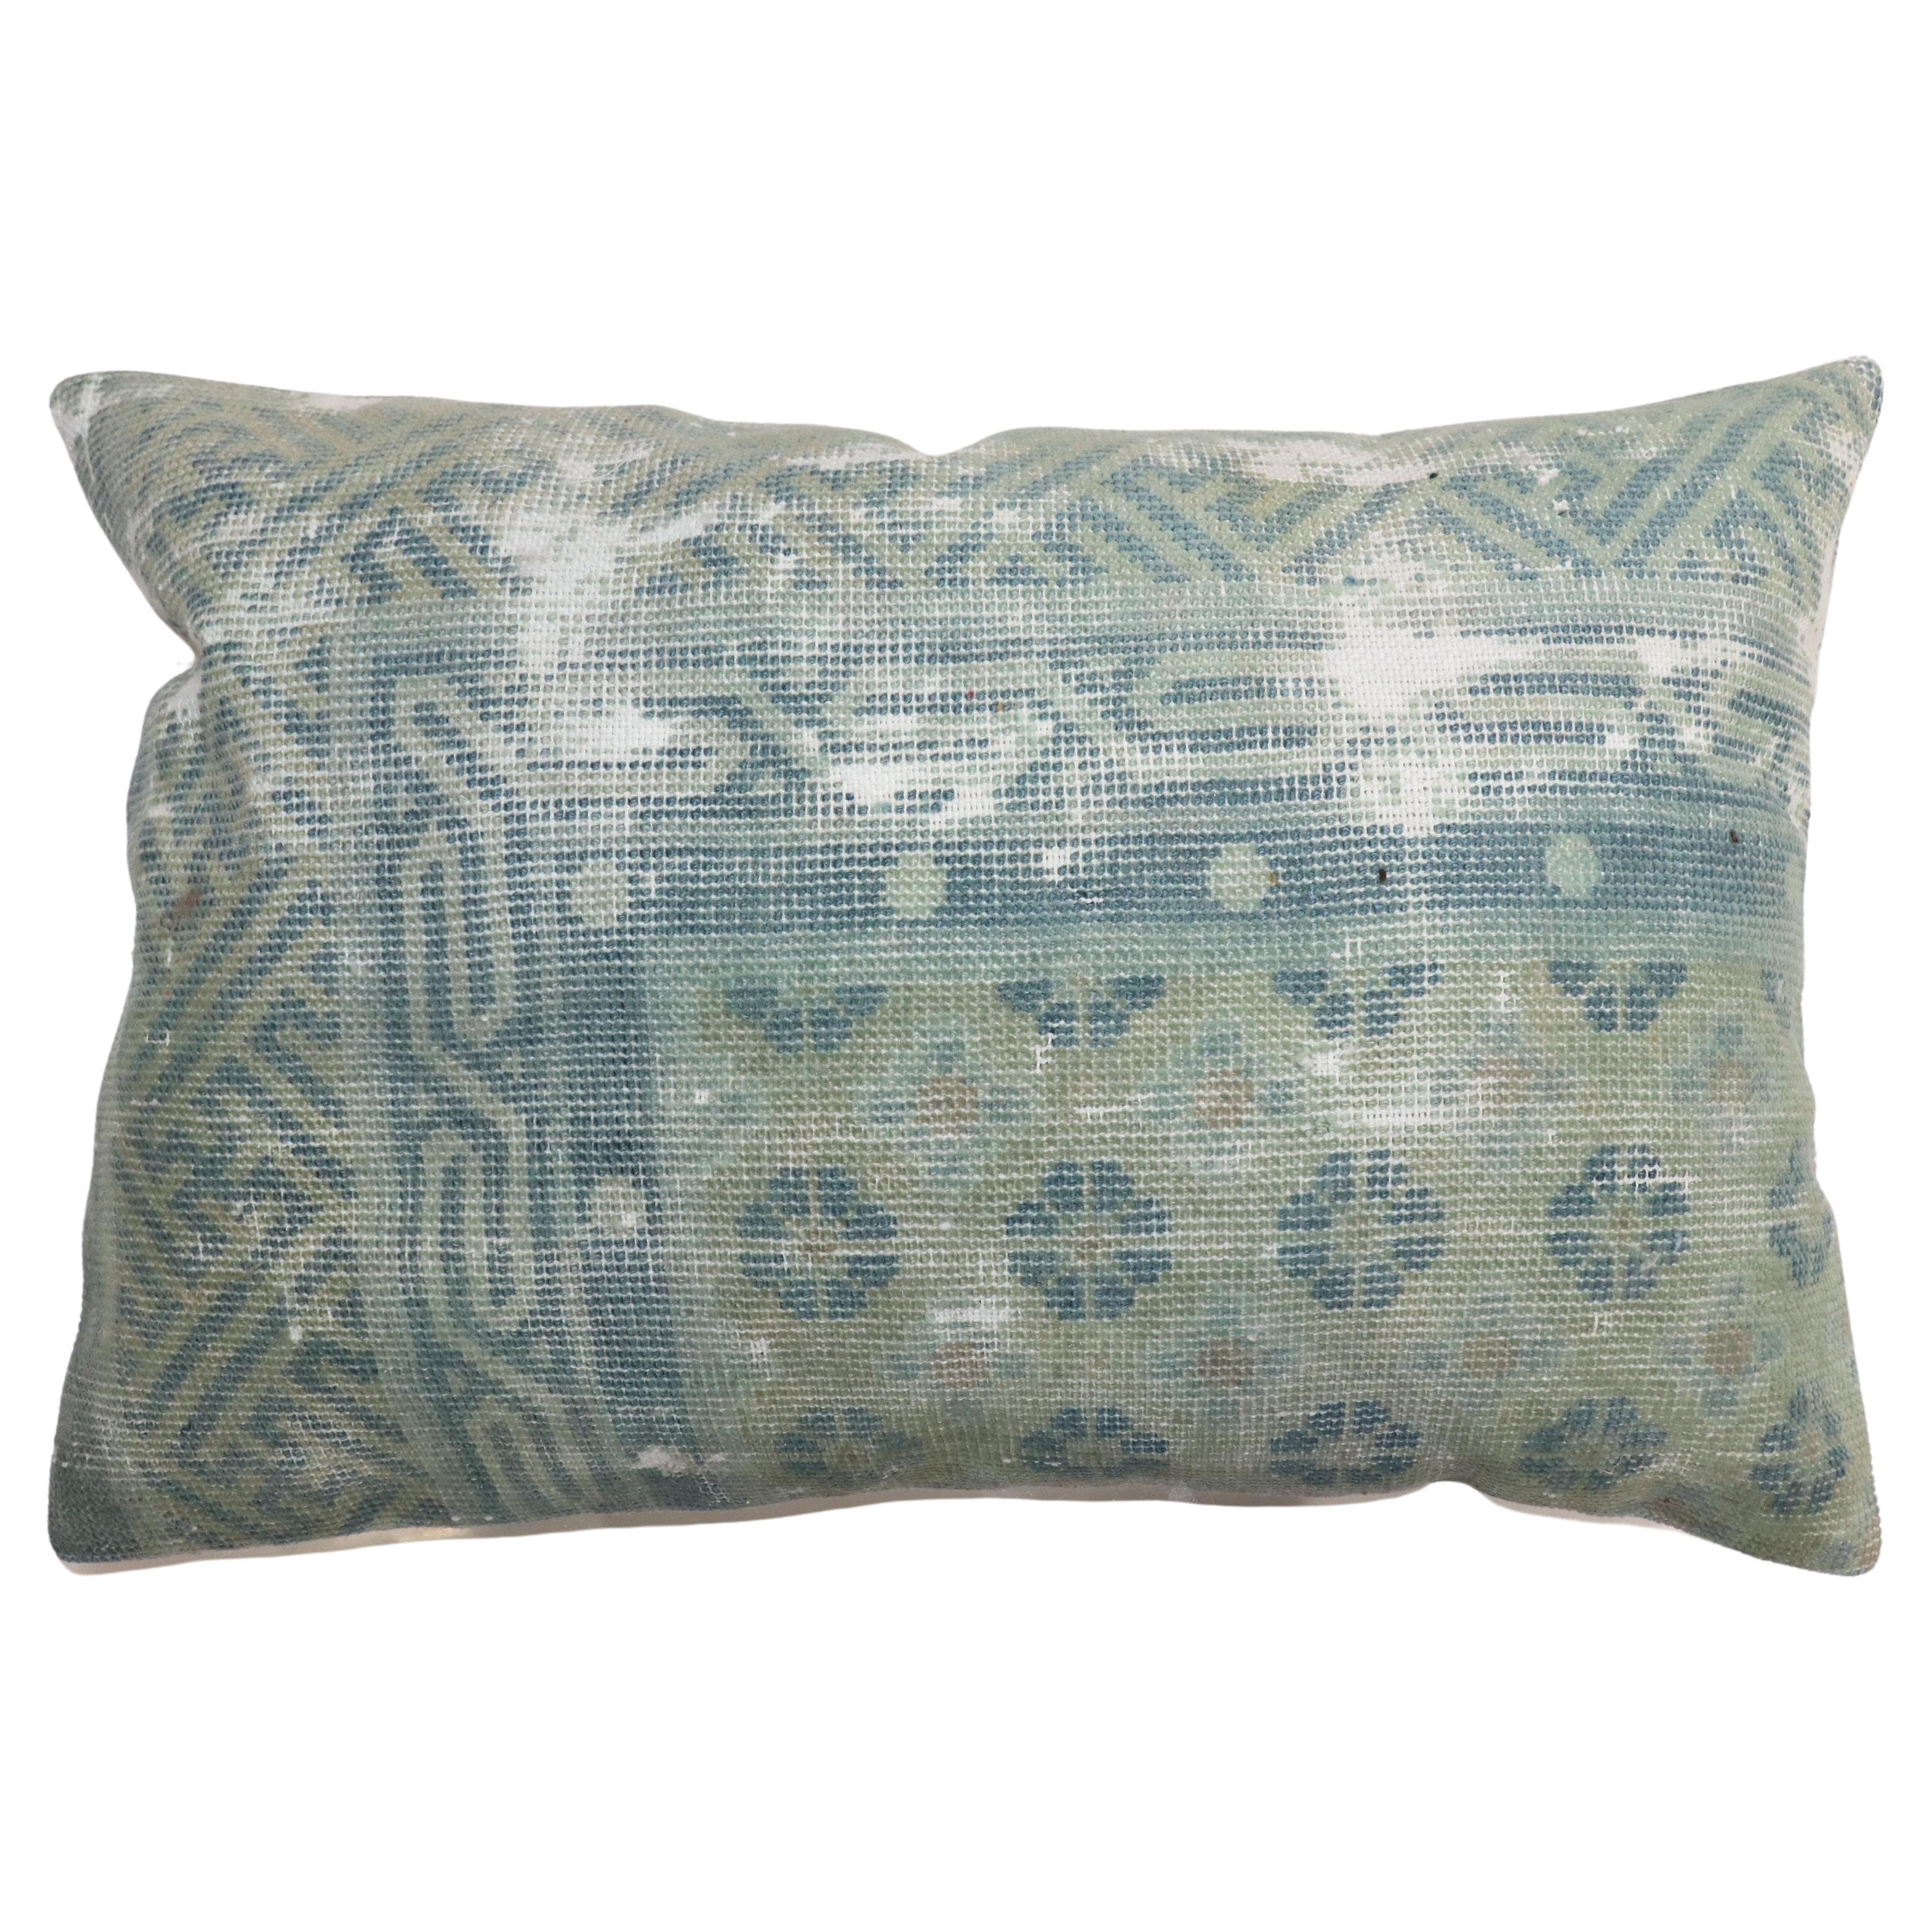 Zabihi Collection Light Blue Worn Chinese Lumbar Rug Pillow